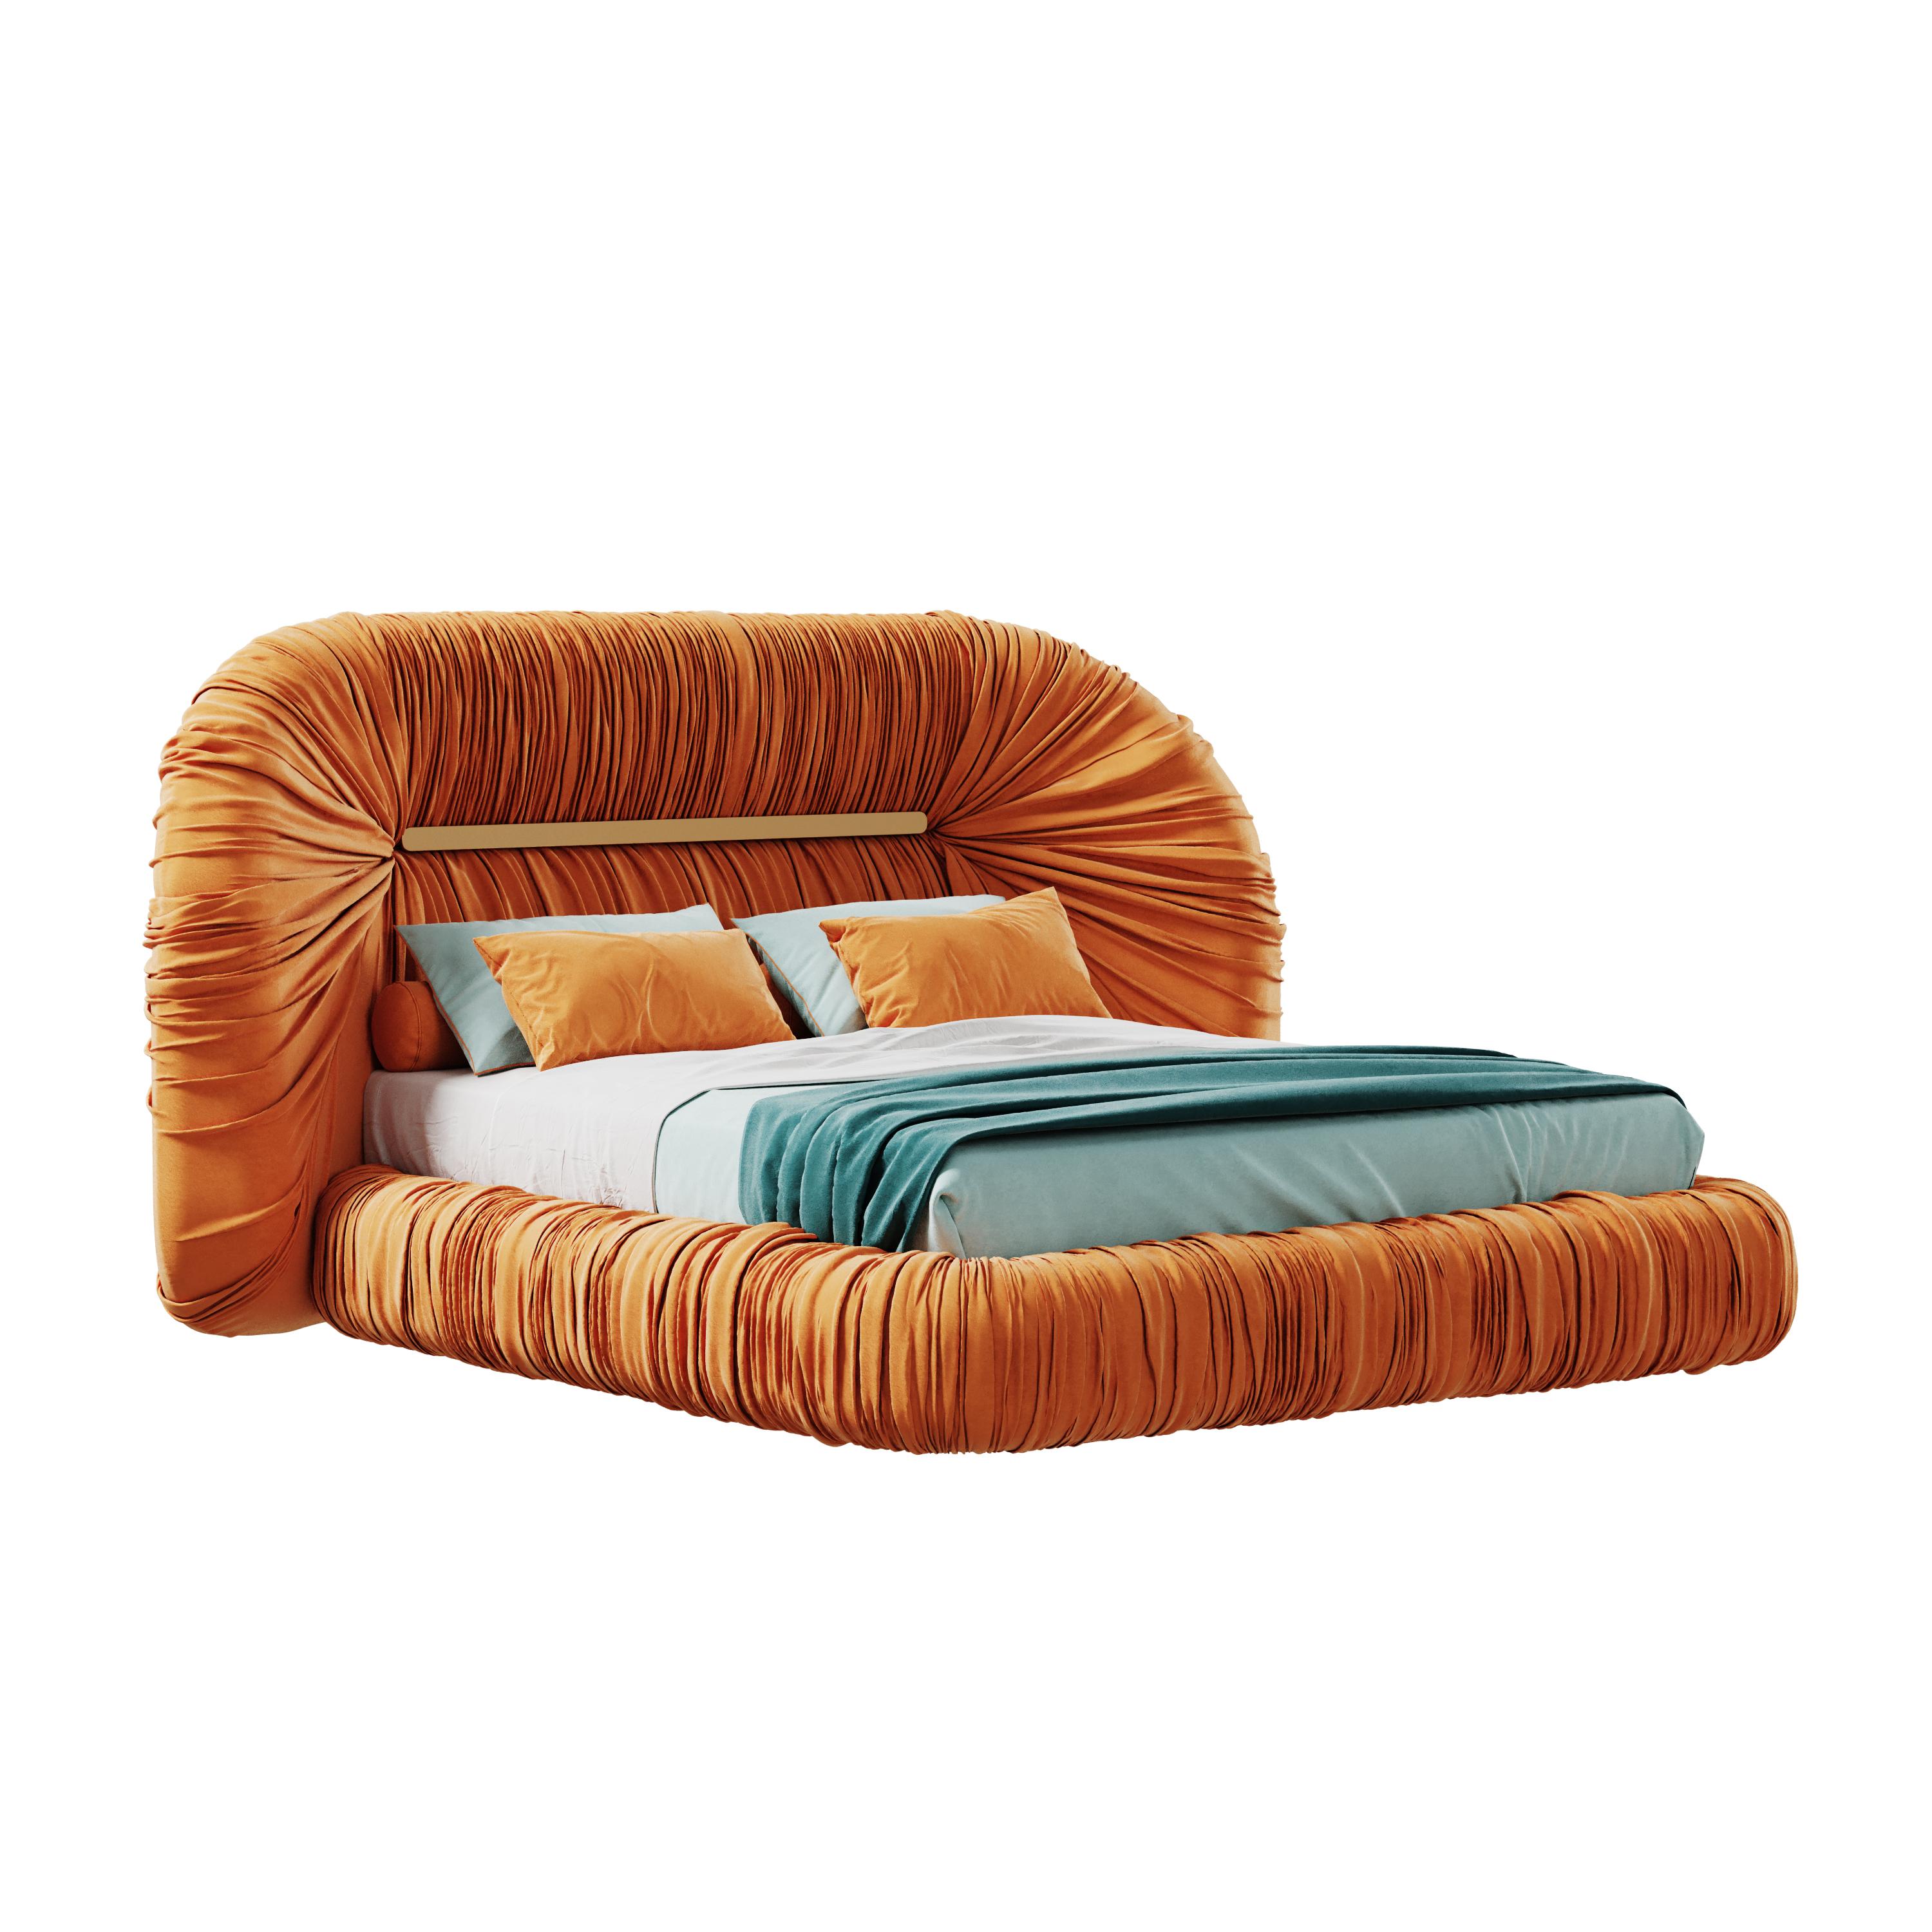 Mid-Century Modern-Inspired Tammi Bed Velvet by Ottiu For Sale 2